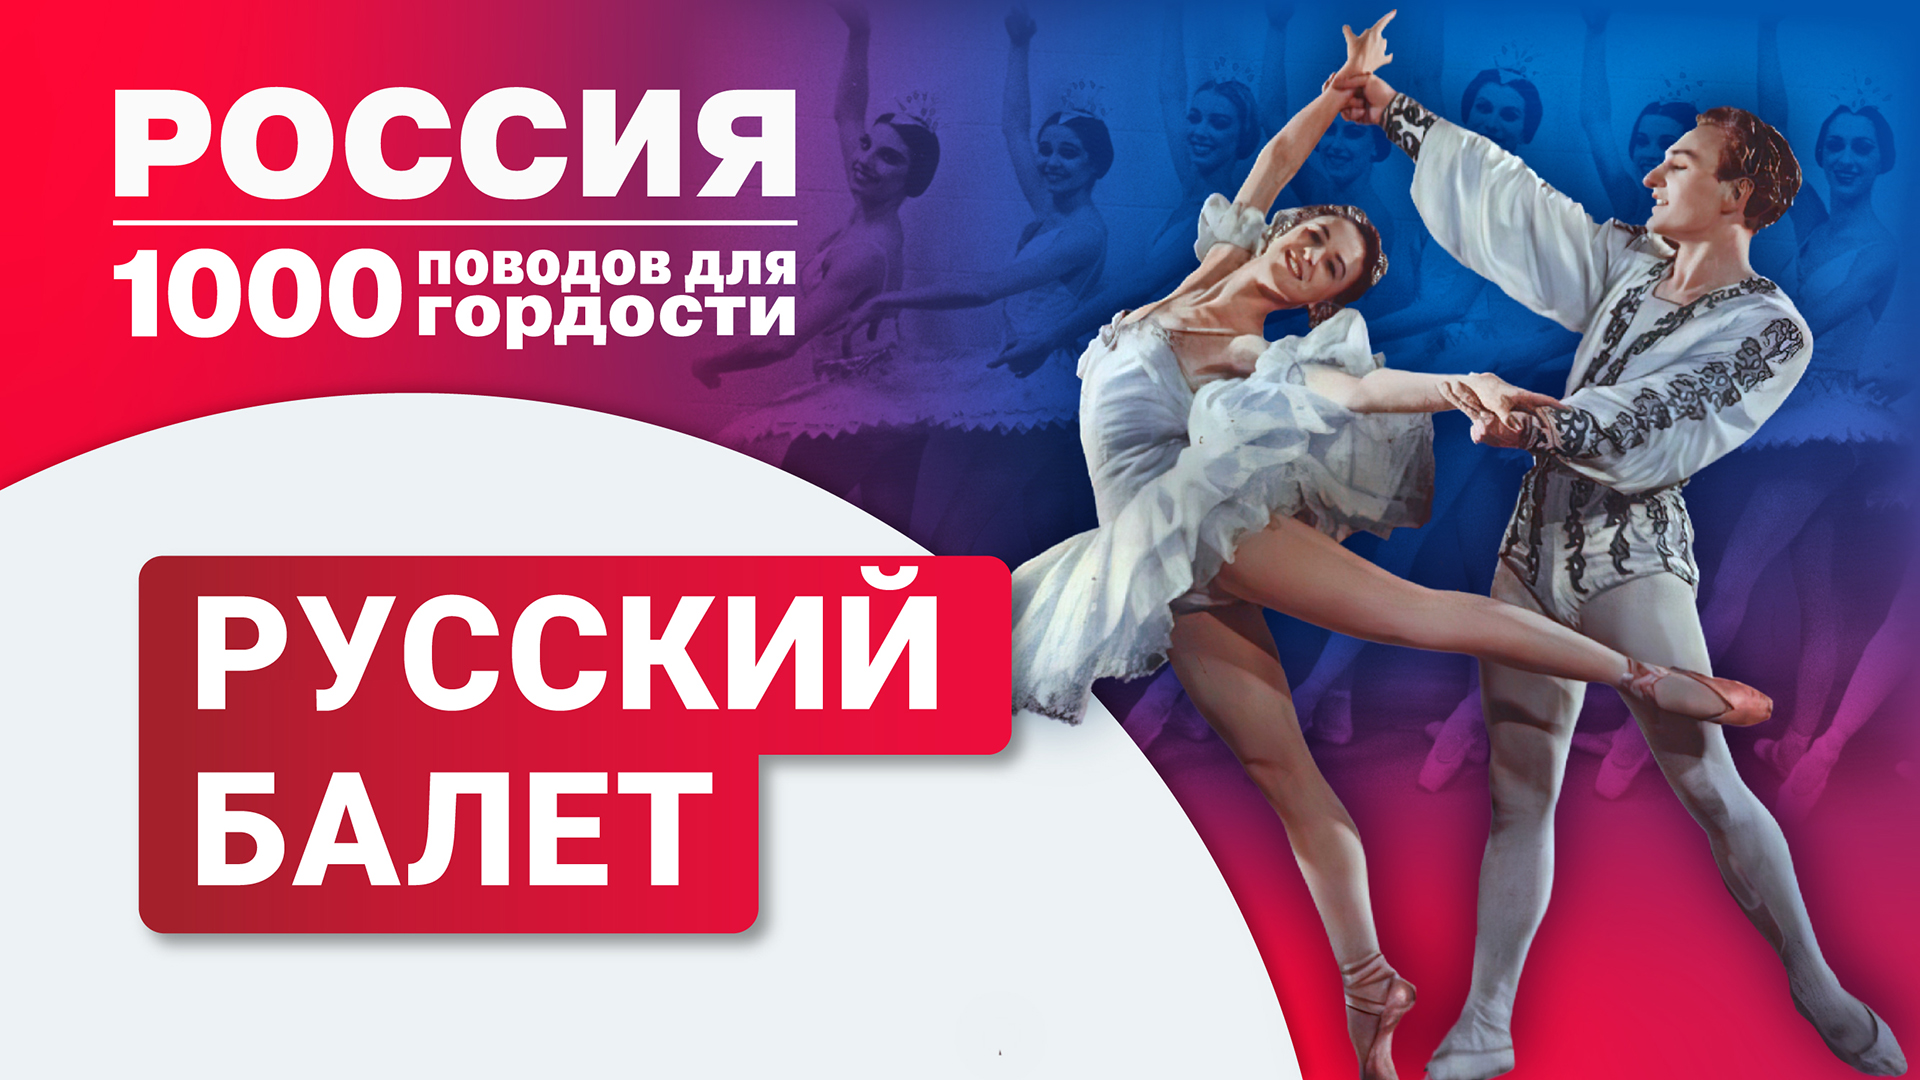 Русский балет: история, самые известные артисты